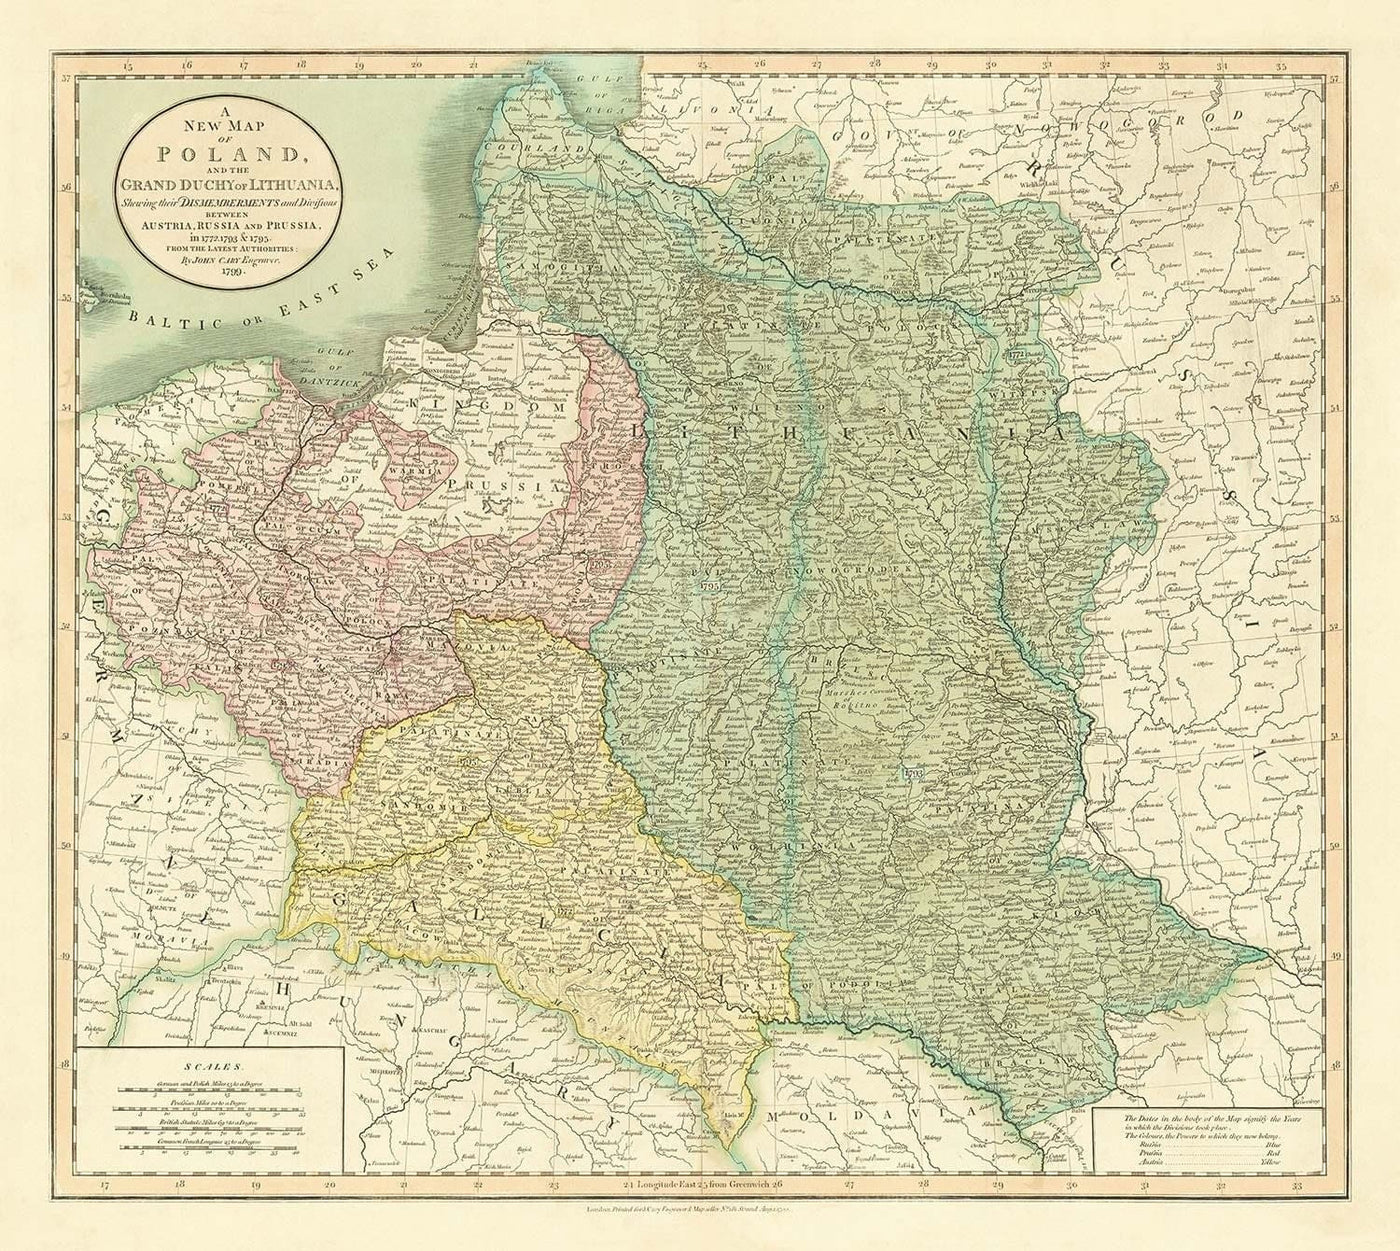 Viejo mapa de Polonia por John Cary, 1799 - Particiones del Commonwealth Polaco-Lituano - Austria, Rusia, Prusia